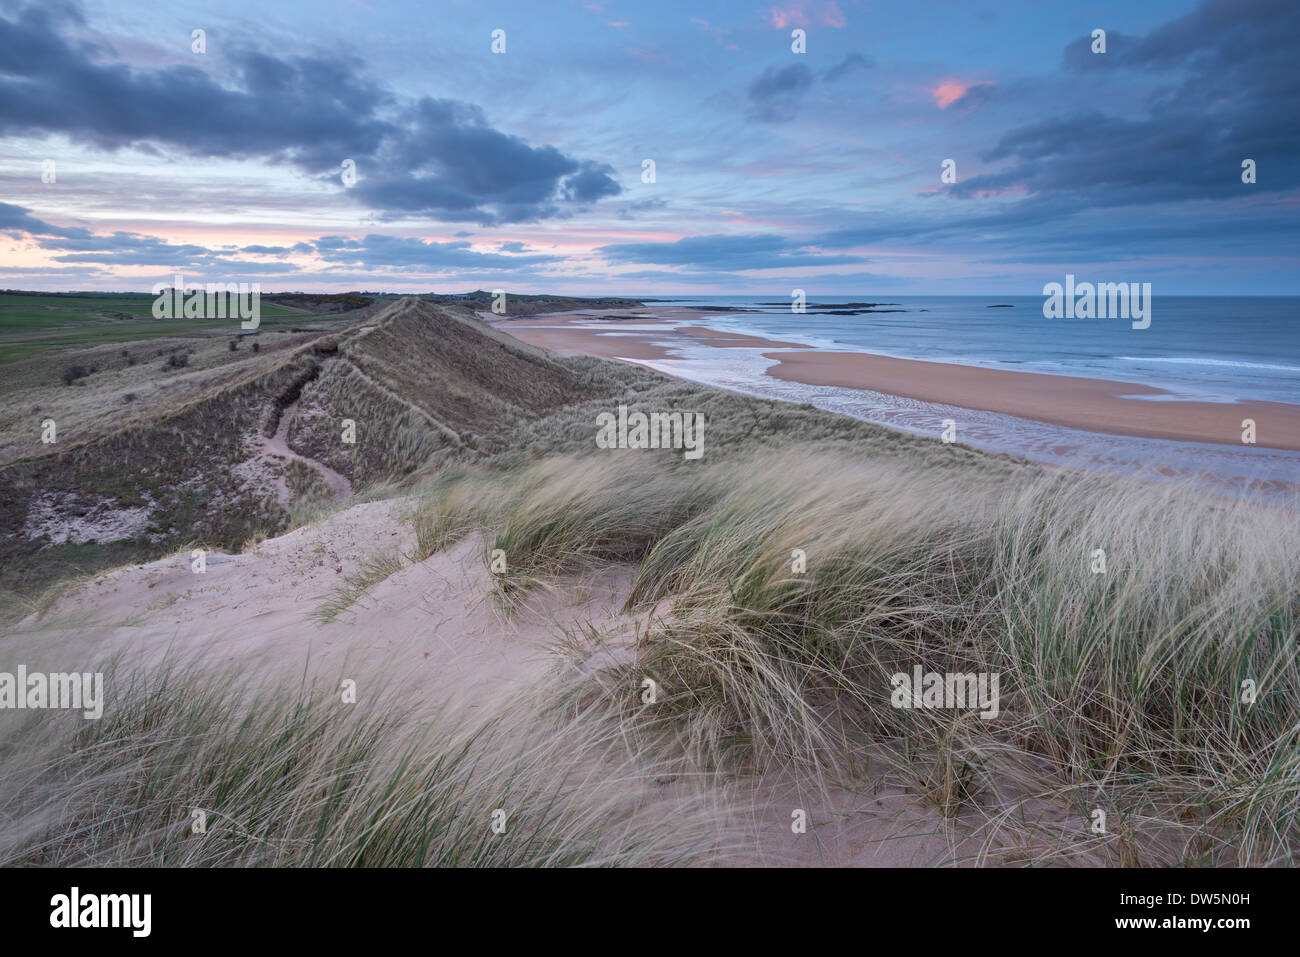 Au-dessus de dunes de sable de plage au crépuscule, Embleton, Northumberland, Angleterre. Printemps (mai) 2013. Banque D'Images